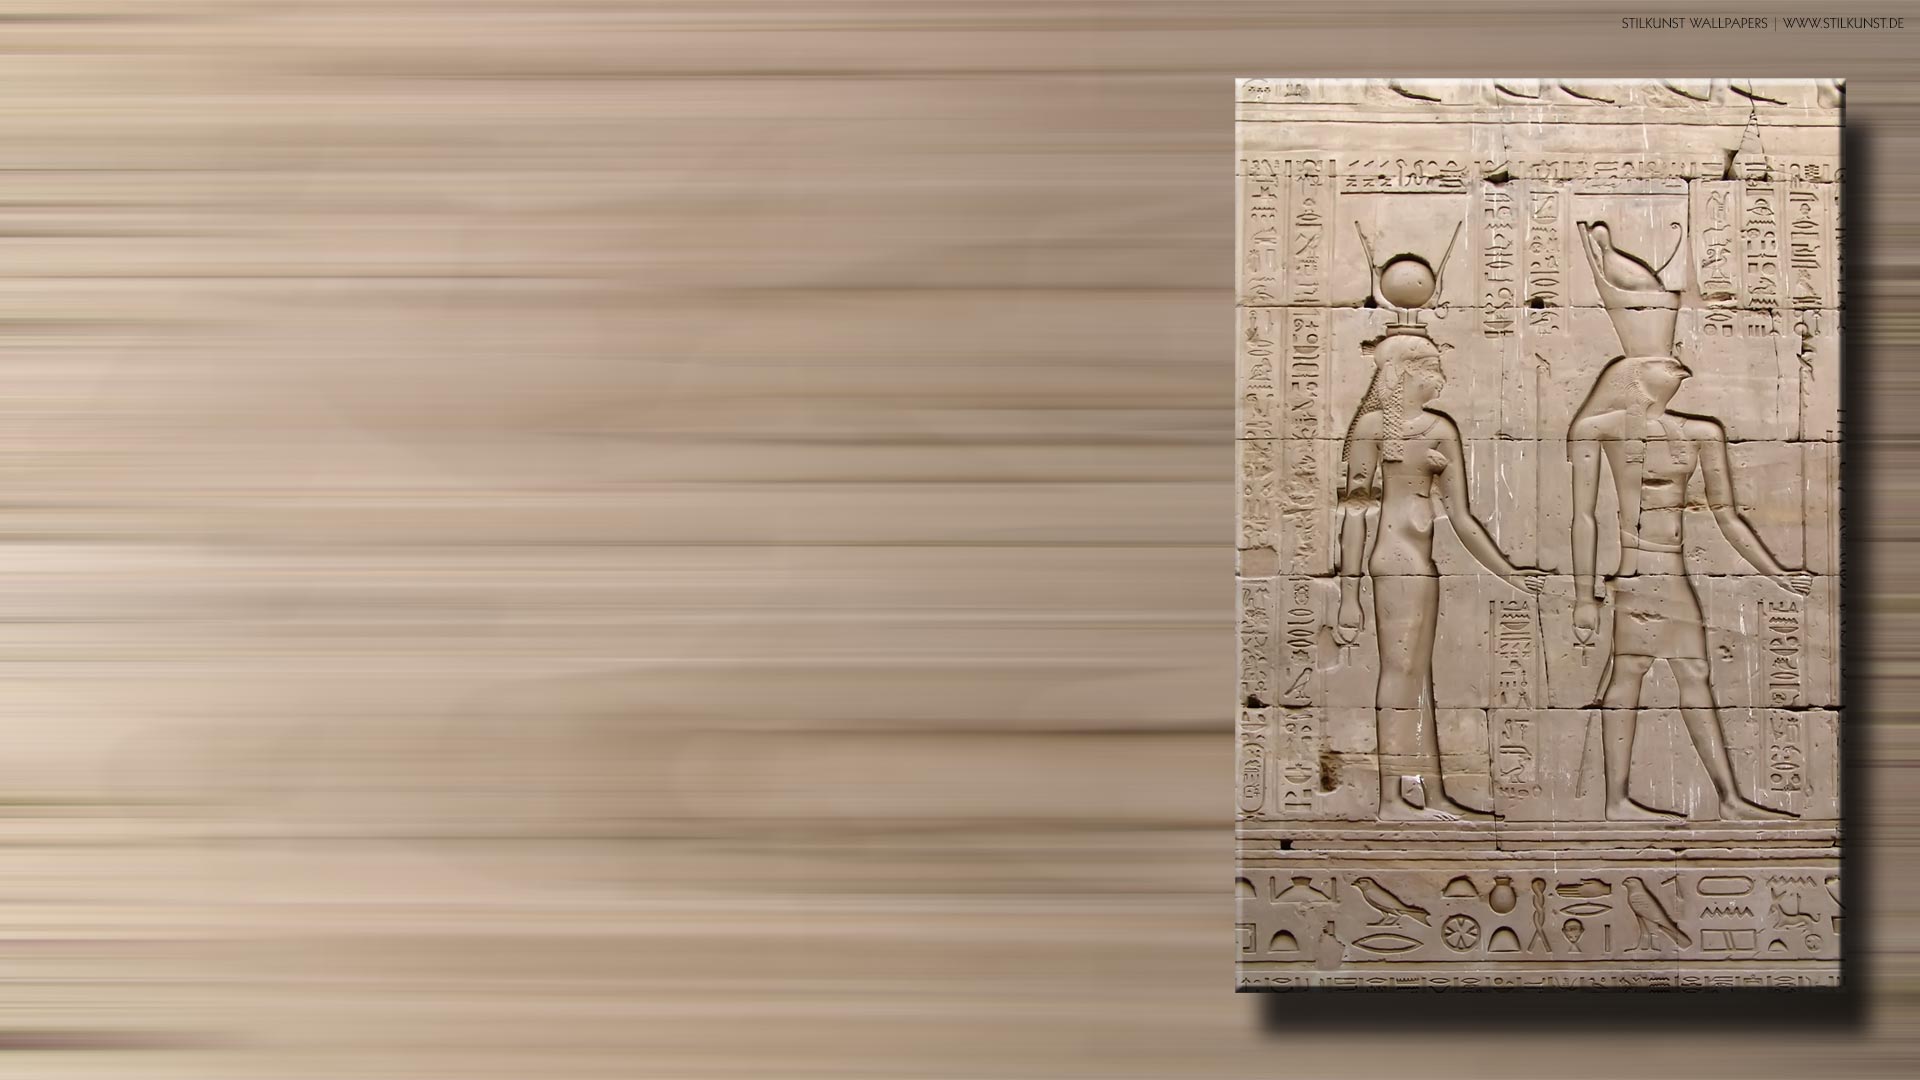 Hathor und Horus | 1920 x 1080px | Bild: ©by Sabrina | Reiner | www.stilkunst.de | Lizenz: CC BY-SA